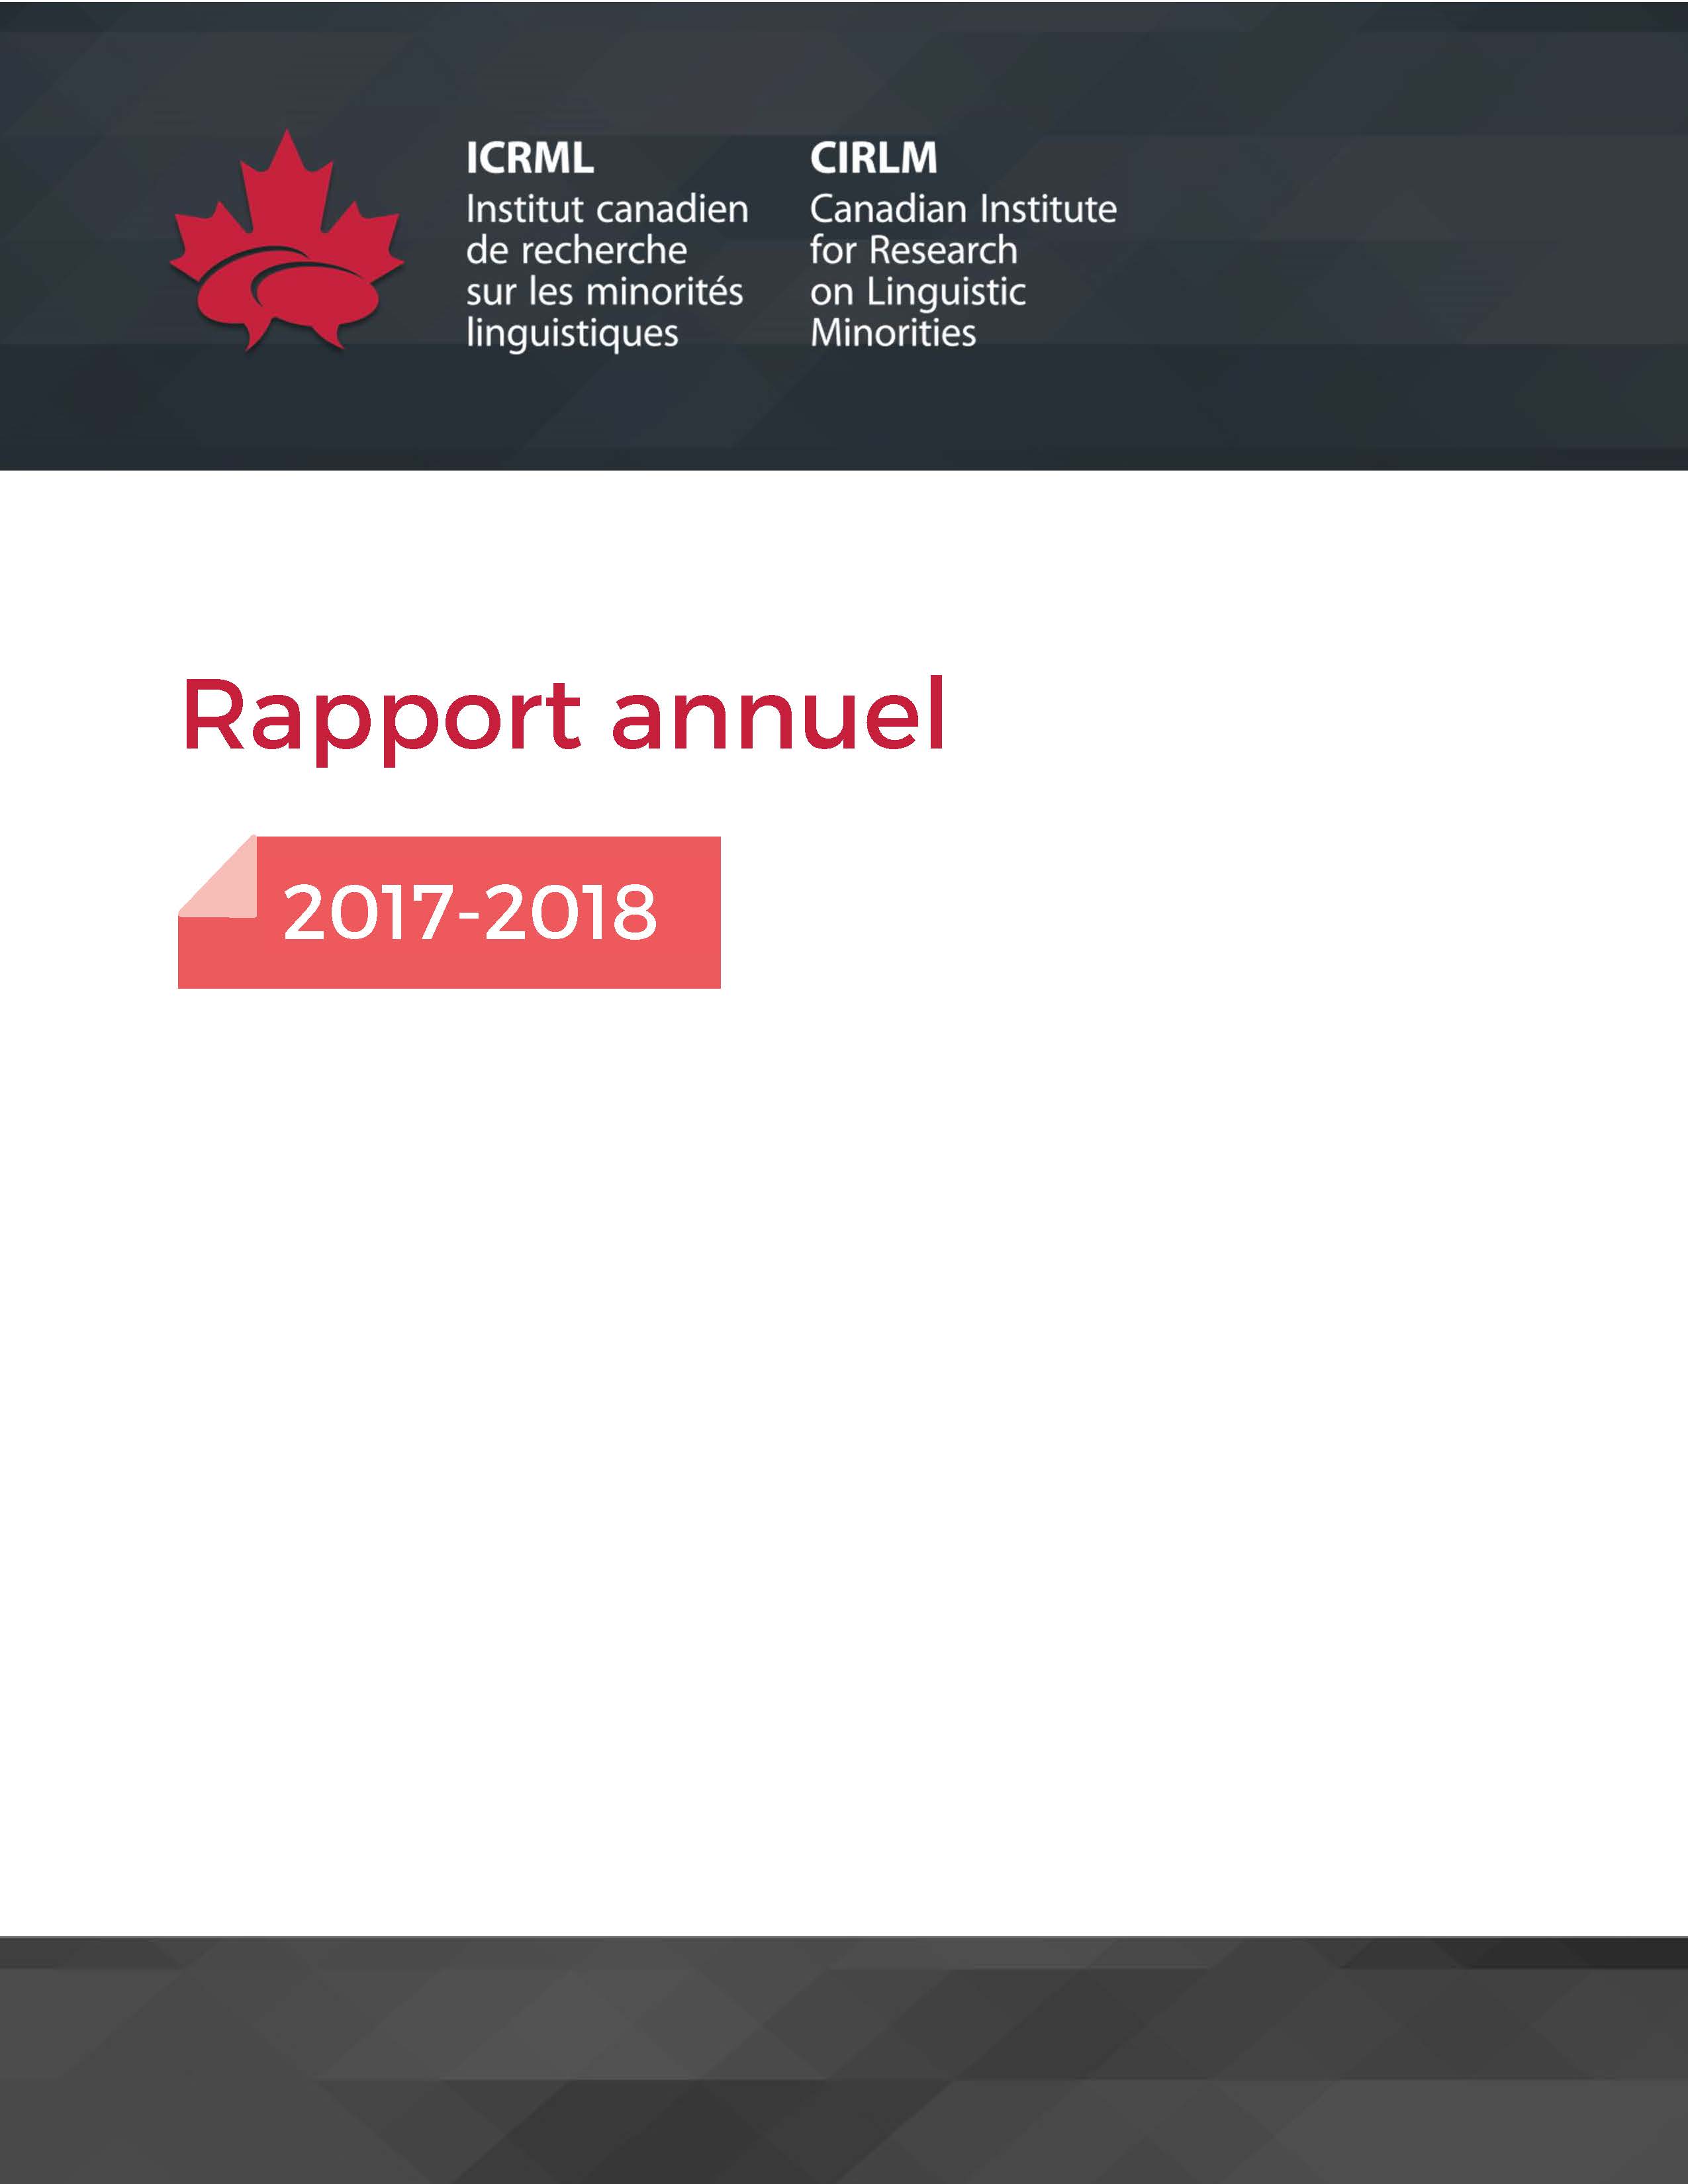 couverture rapport annuel 2017 2018